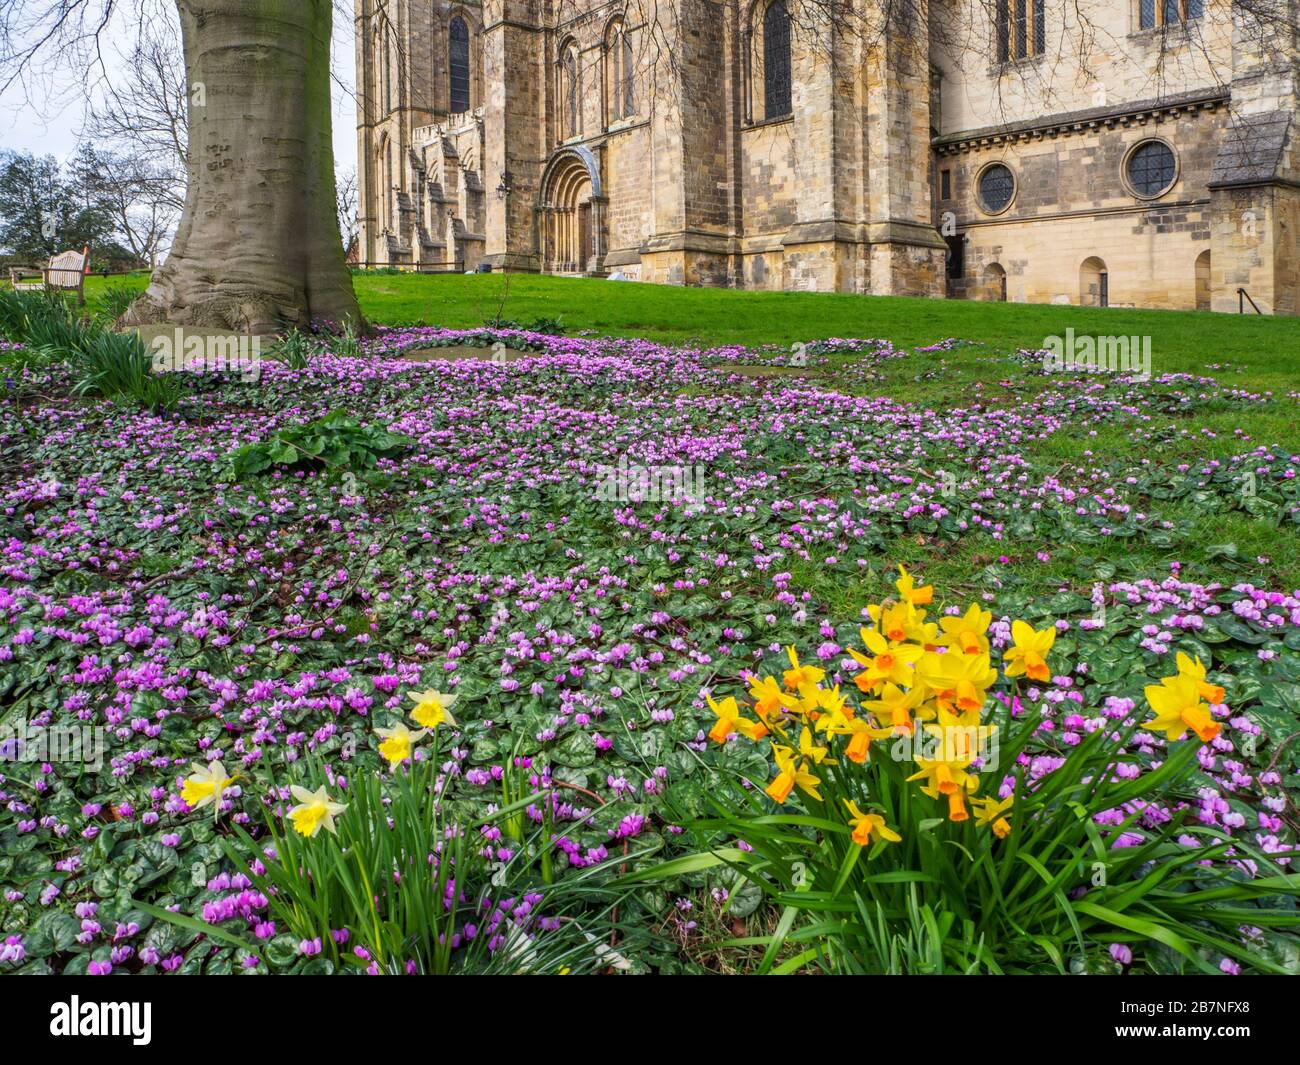 Cyclamen et jonquilles fleuris sous un arbre à la cathédrale de Ripon au printemps Ripon North Yorkshire England Banque D'Images